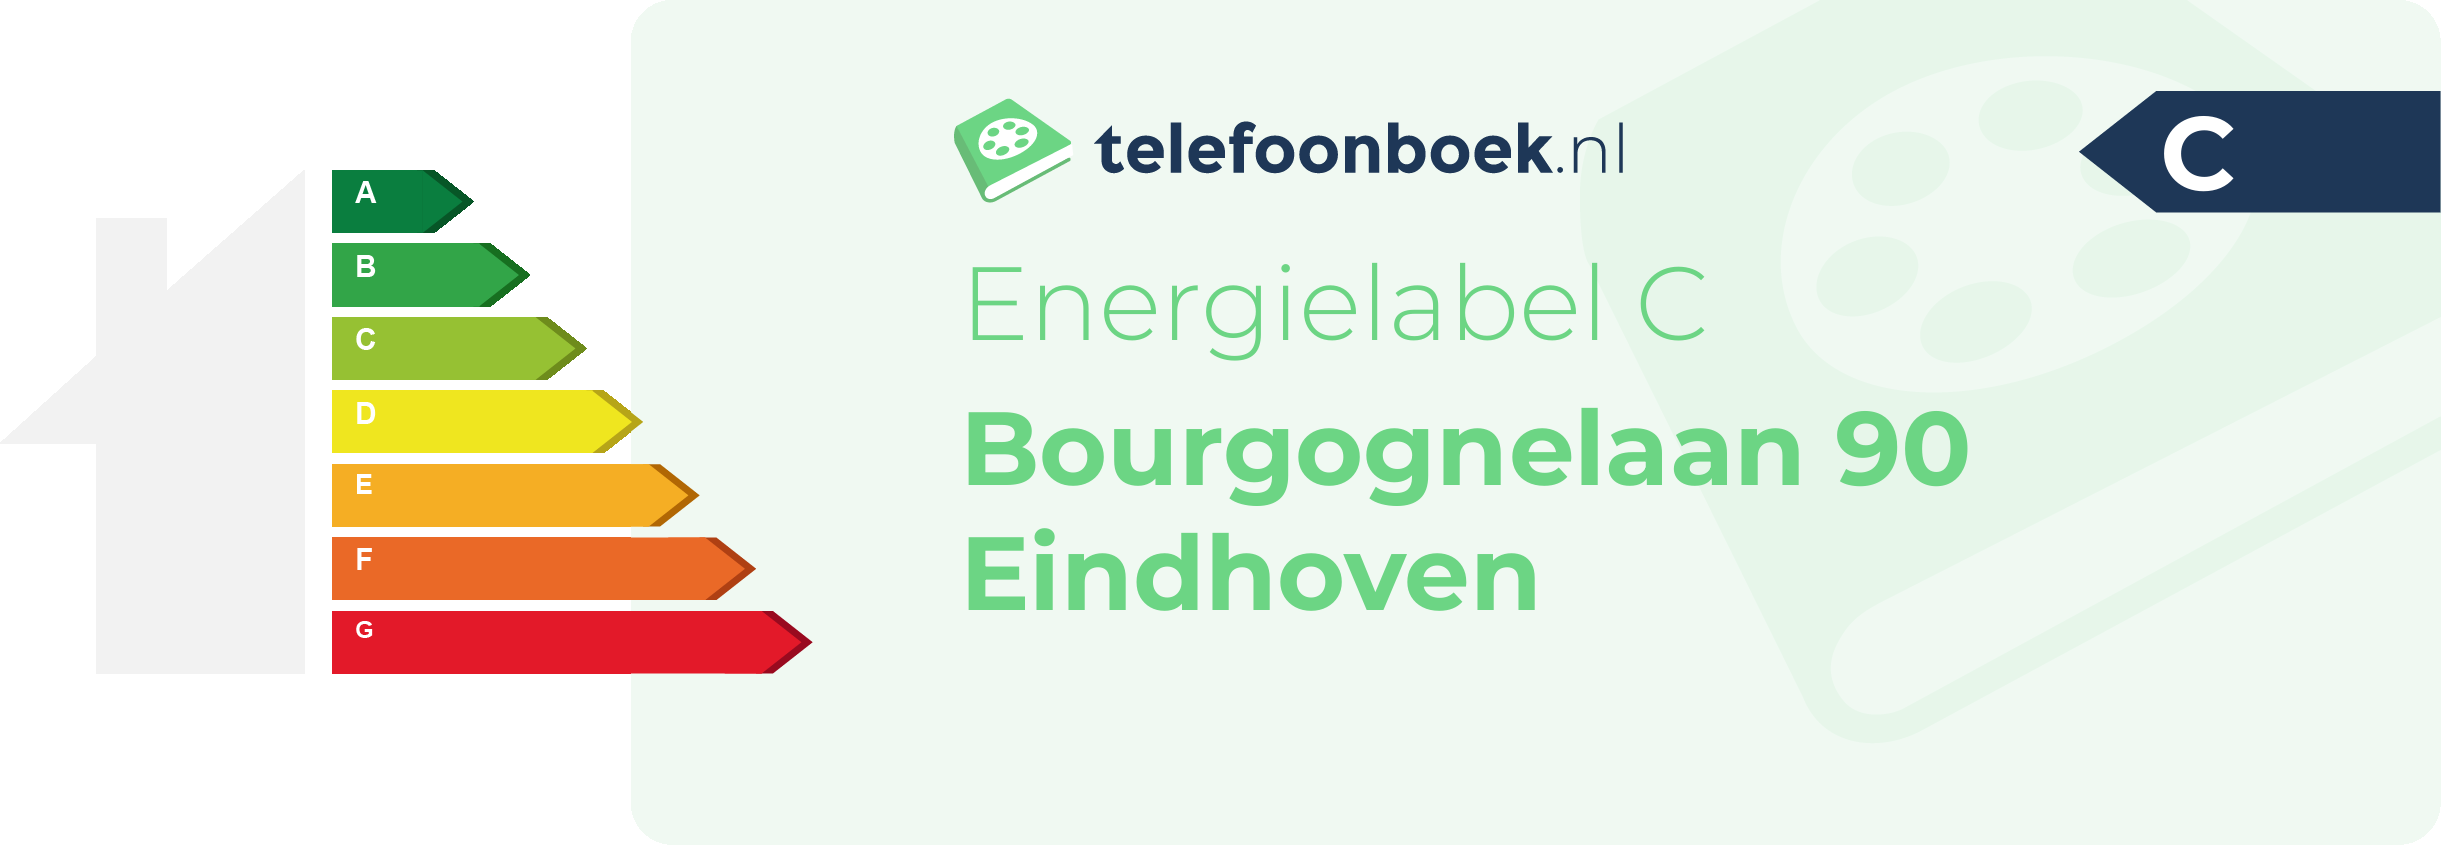 Energielabel Bourgognelaan 90 Eindhoven